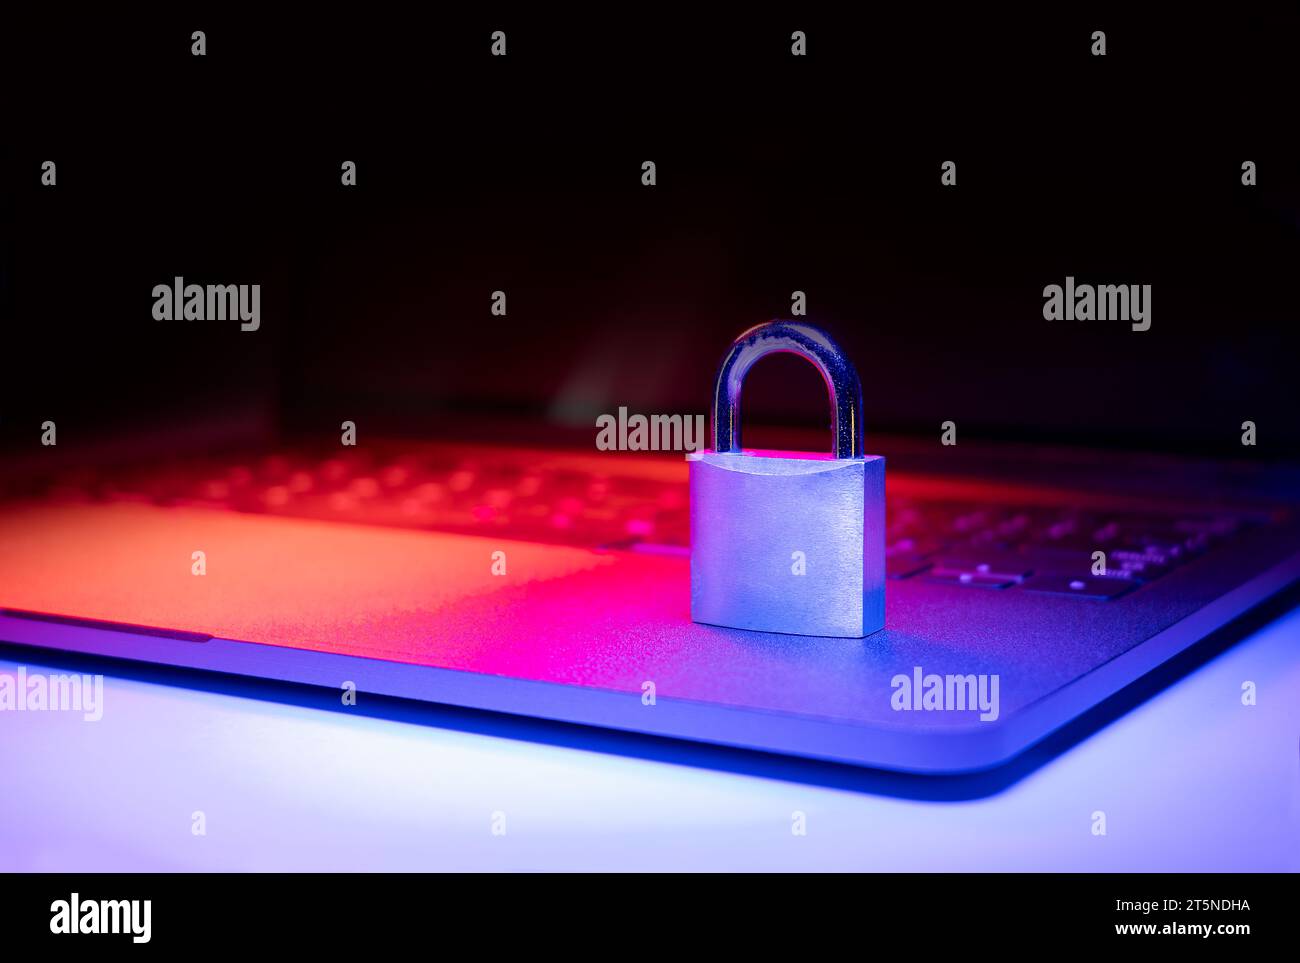 Großaufnahme eines Vorhängeschlosses auf einem Laptop, der mit blauem und rotem Licht beleuchtet ist. Phishing, Cybersicherheitsgefahr oder Ransomware-Angriff. Verschlüsselter Datenschutz in E-Mails. Stockfoto